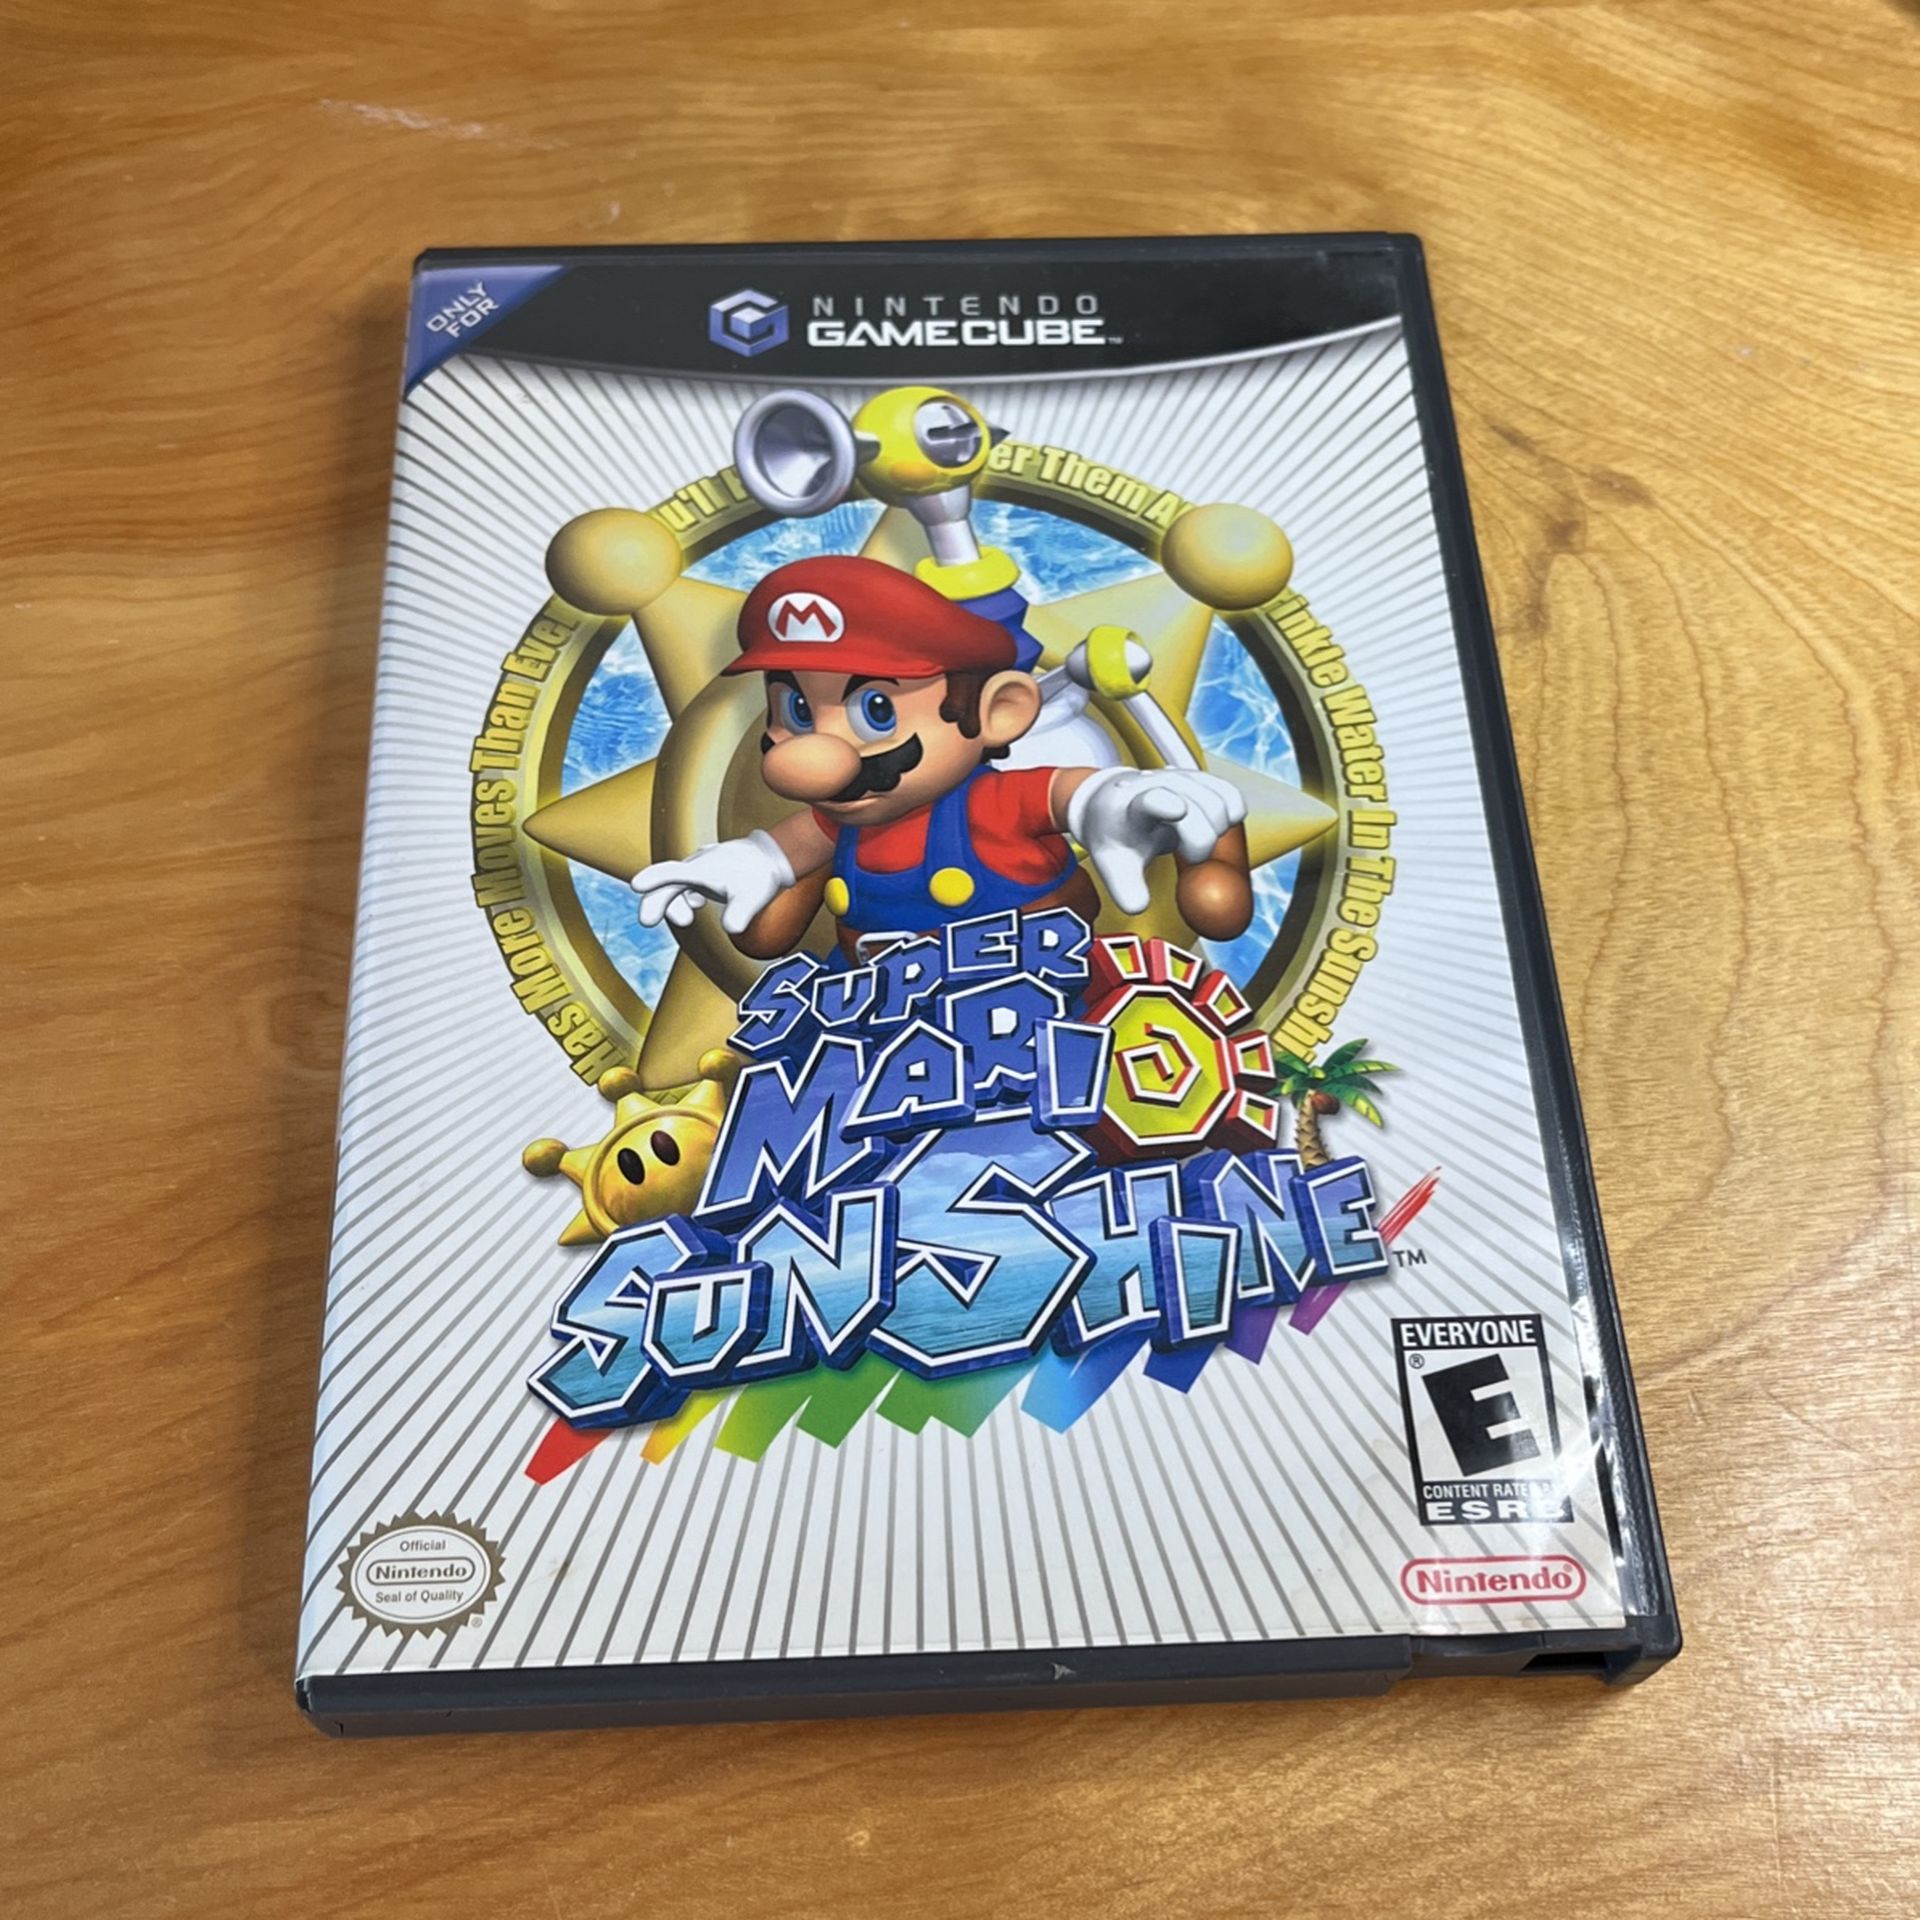 Nintendo GameCube - Super Mario Sunshine